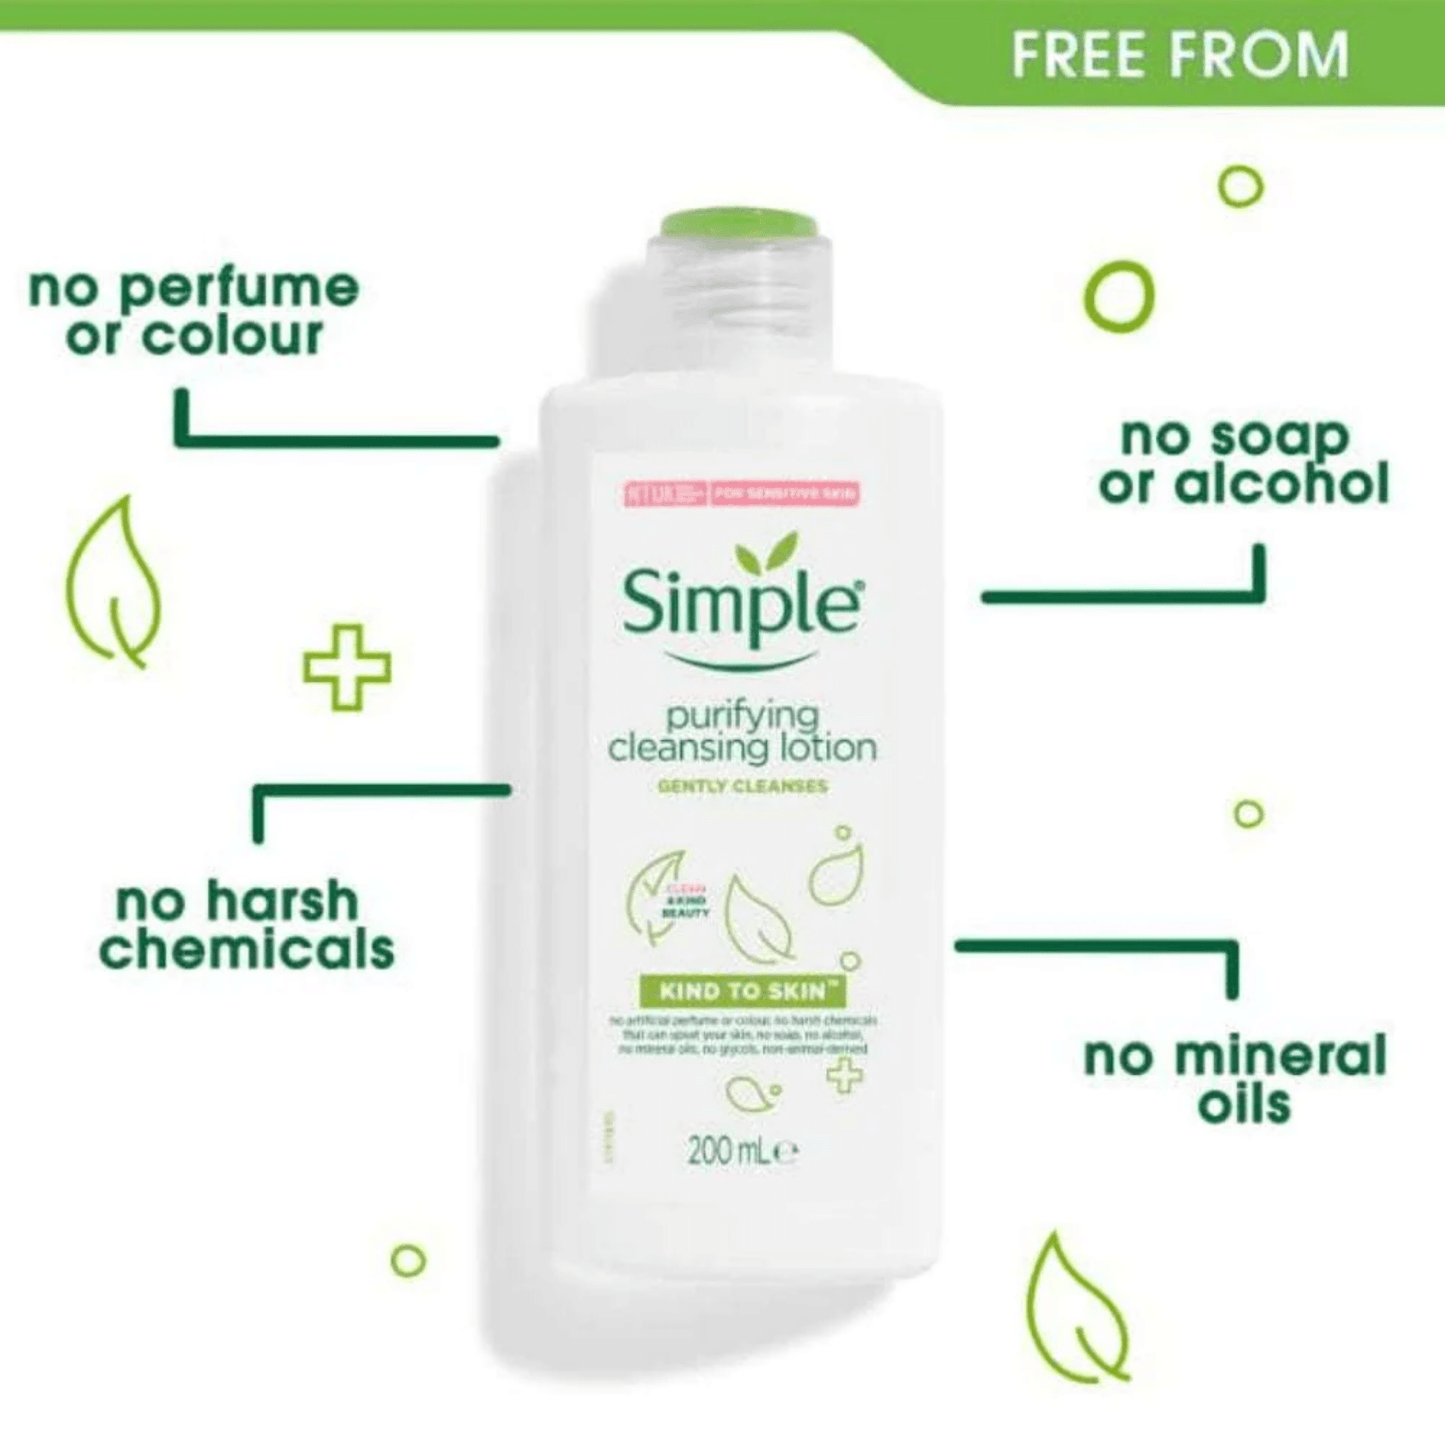 Buy Simple Skin Purifying Cleansing Lotion at SkinStash Pakistan